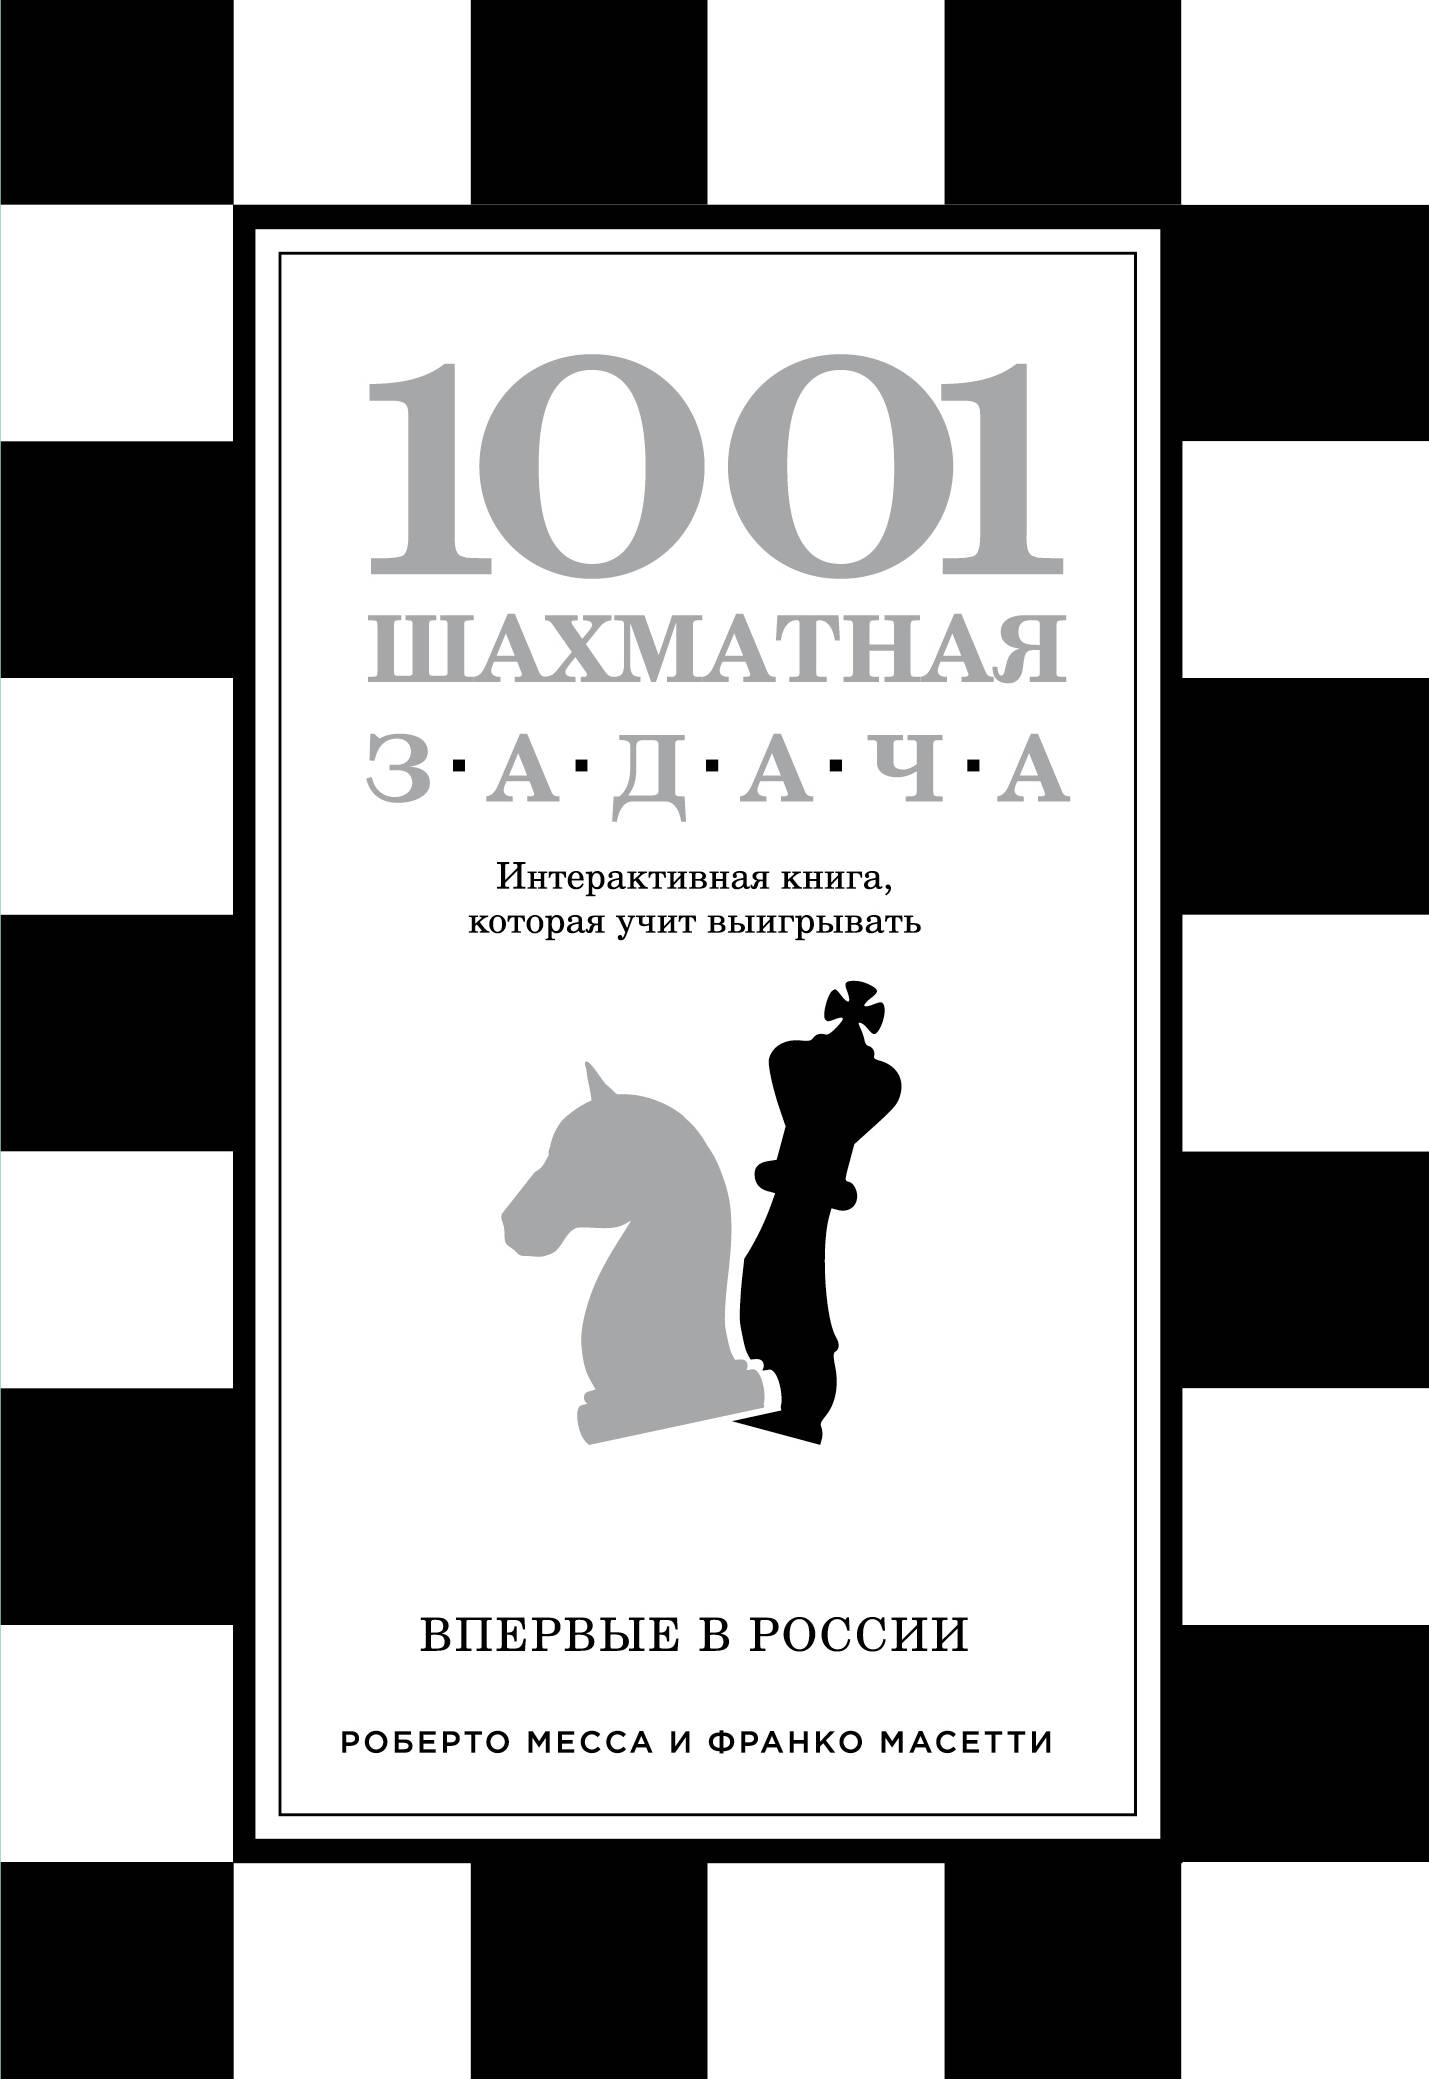 Ионов В.Э. - 1001 шахматная задача. Интерактивная книга, которая учит выигрывать